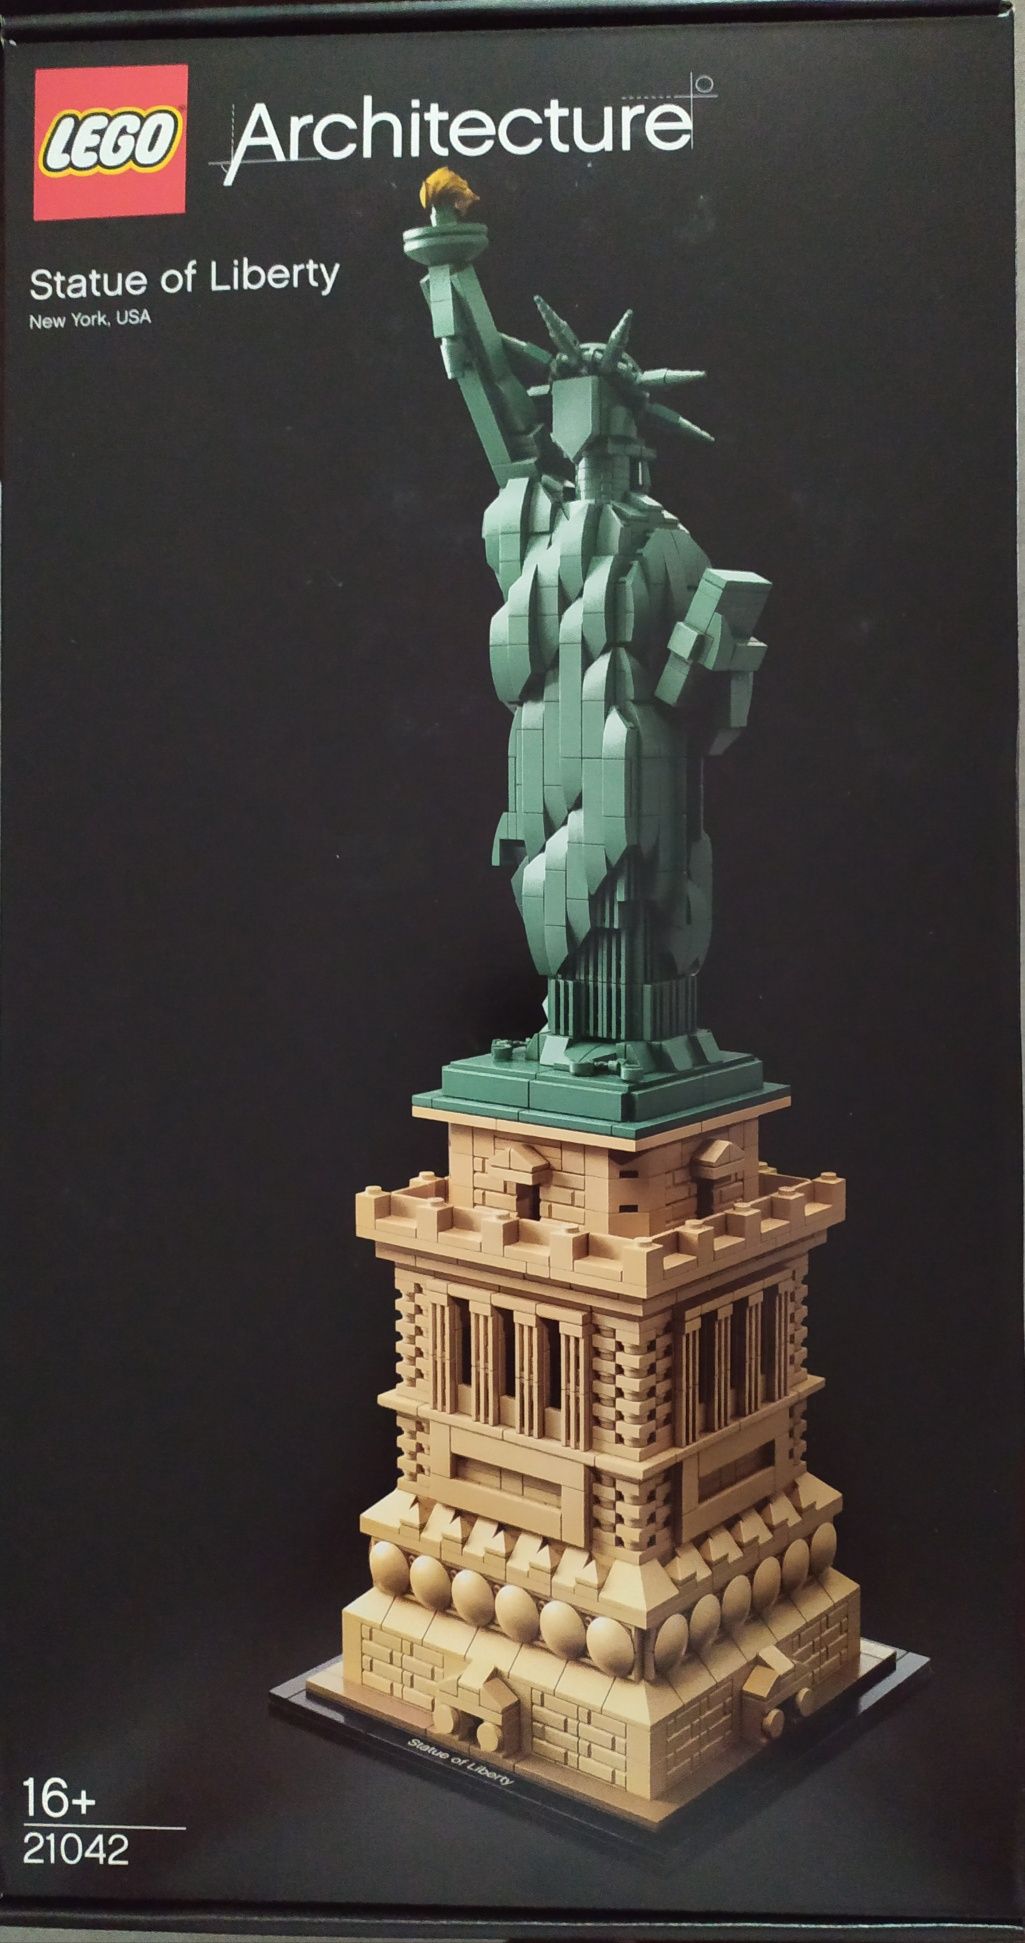 Lego Colecção Architecture 21042 Statue of Liberty